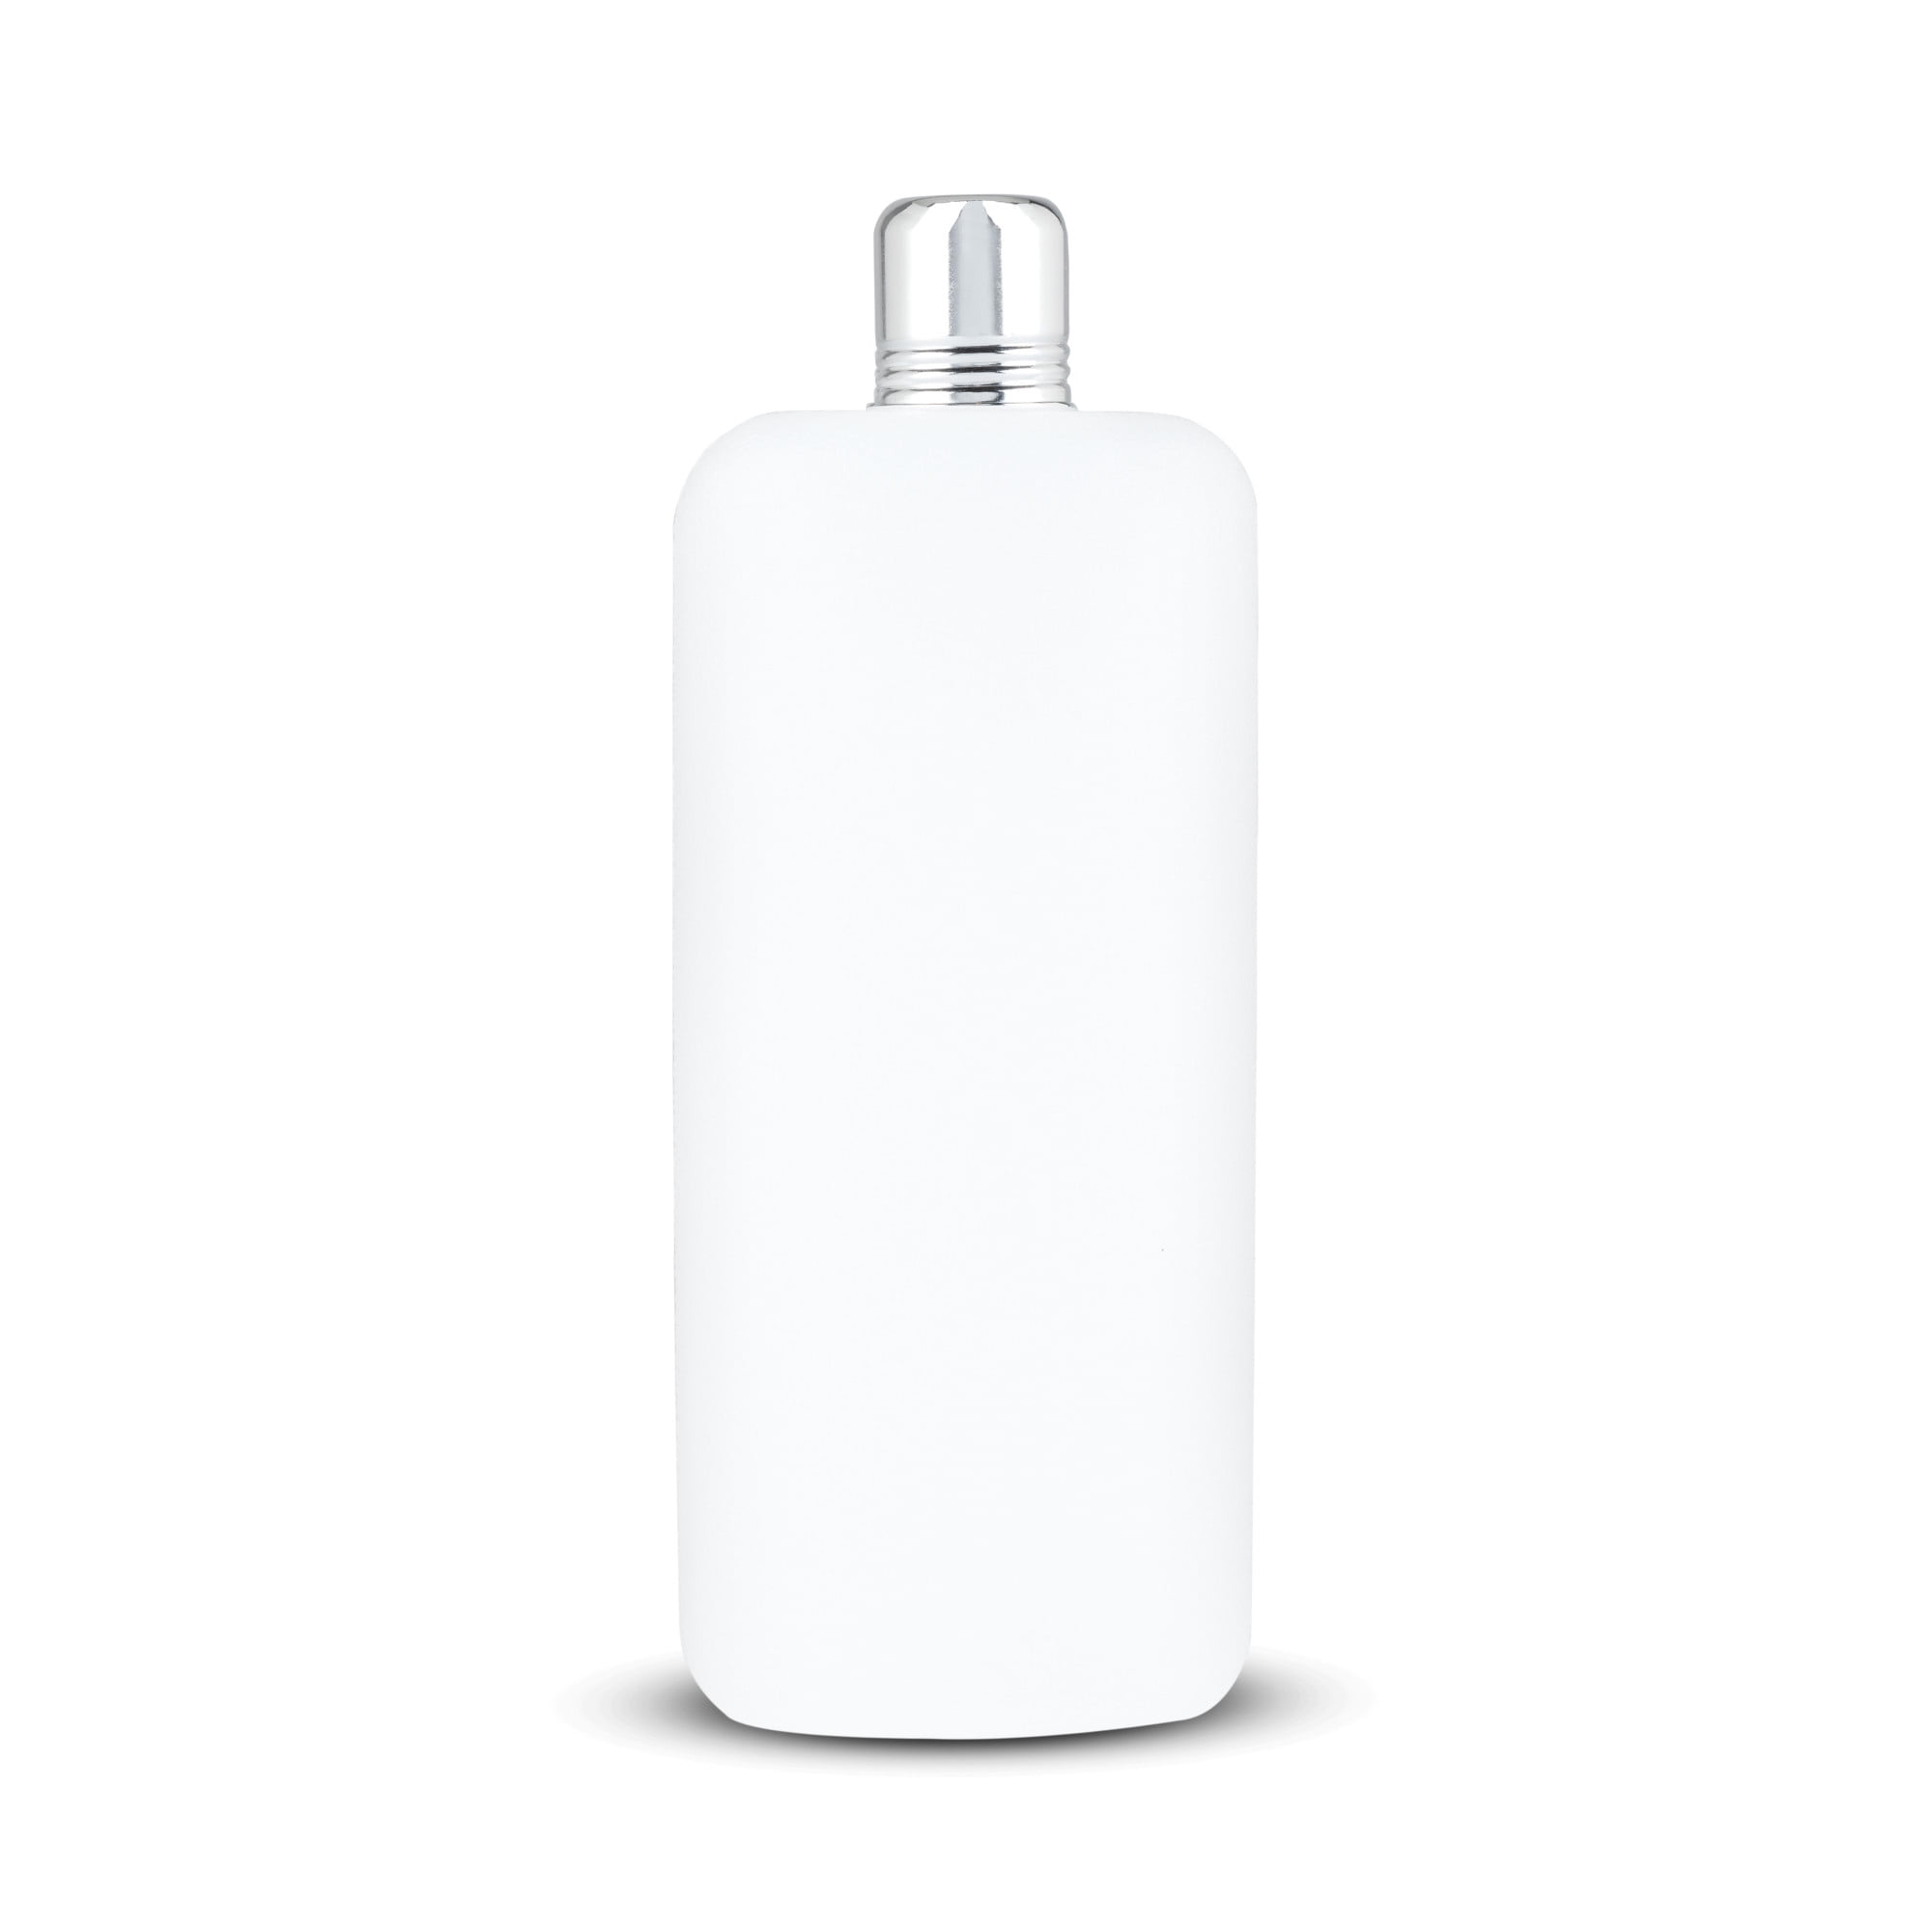 Franmara 26 Oz White Plastic Travel Flask 